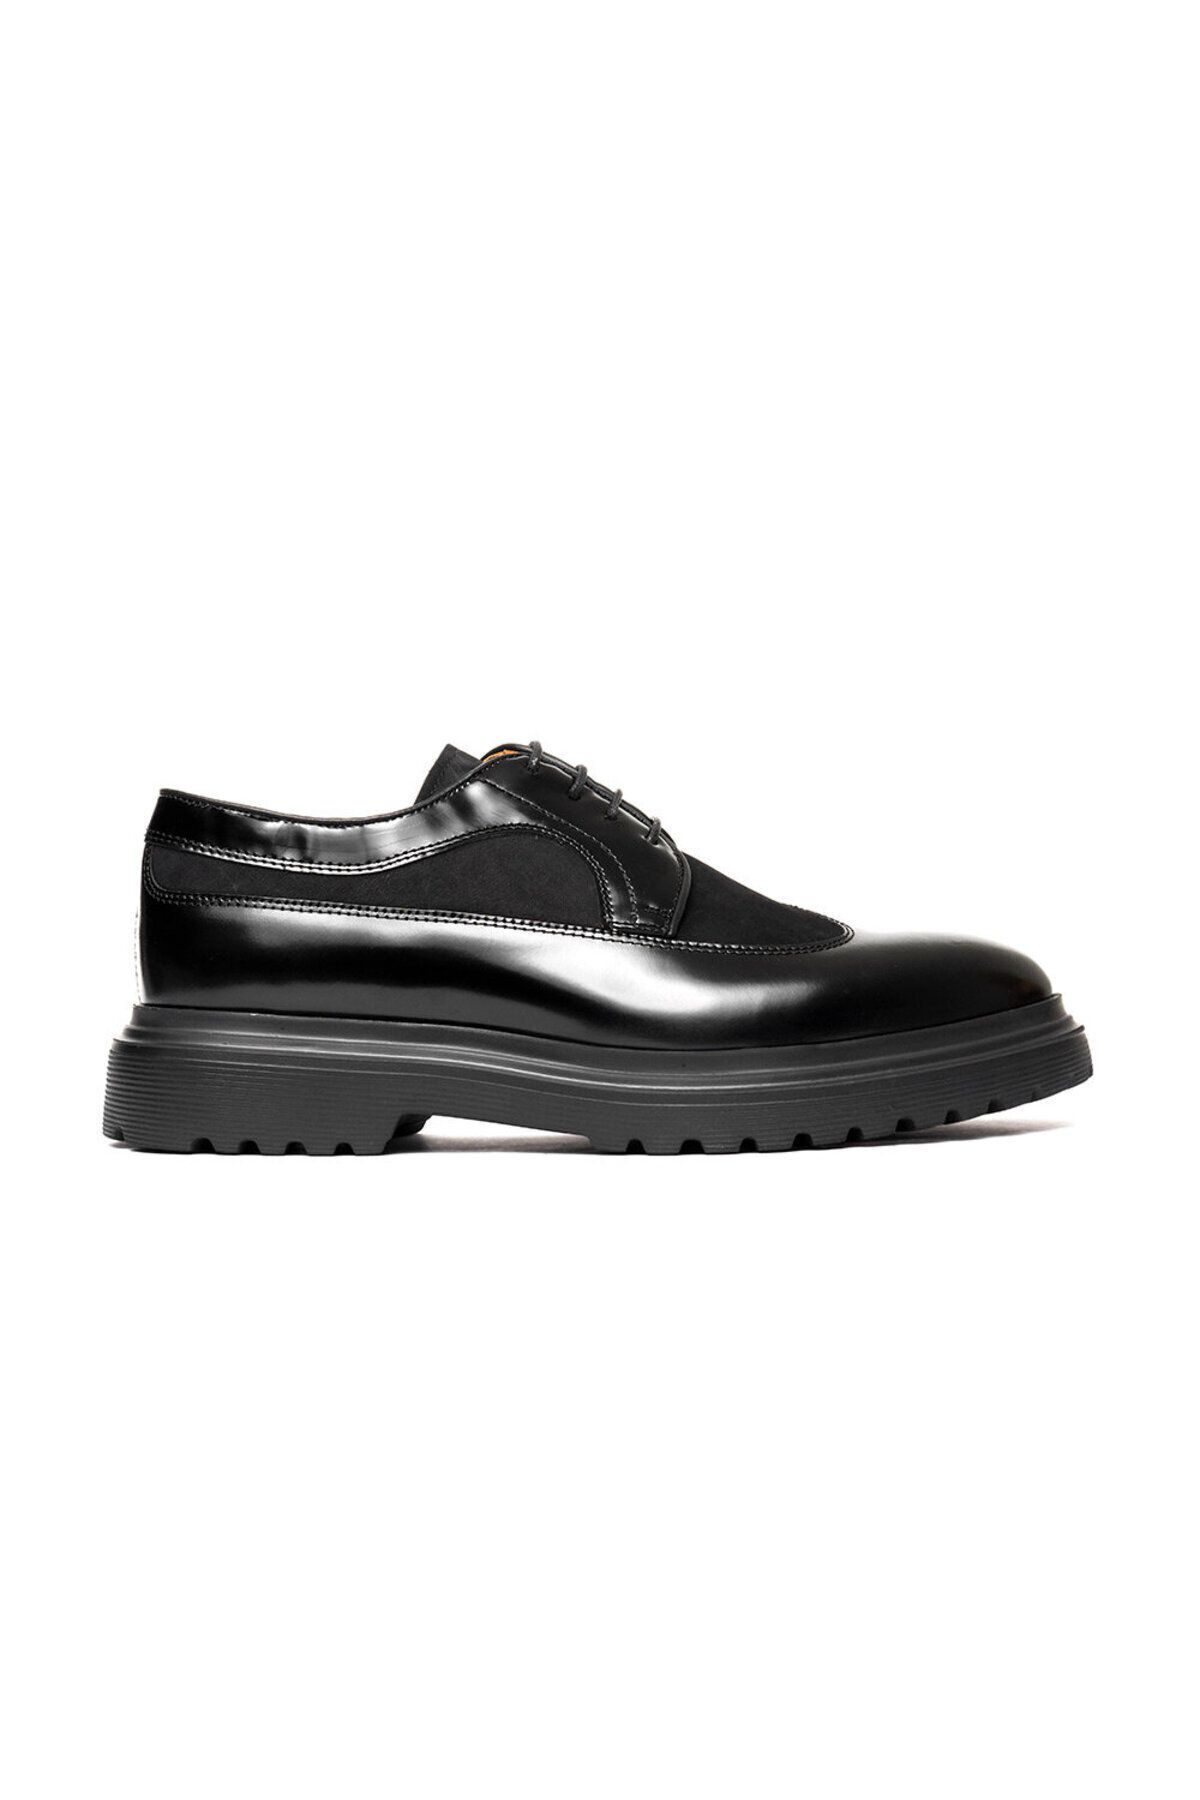 Greyder Erkek Siyah Hakiki Deri Klasik Ayakkabı 3k1ka16320 Fiyatı ...